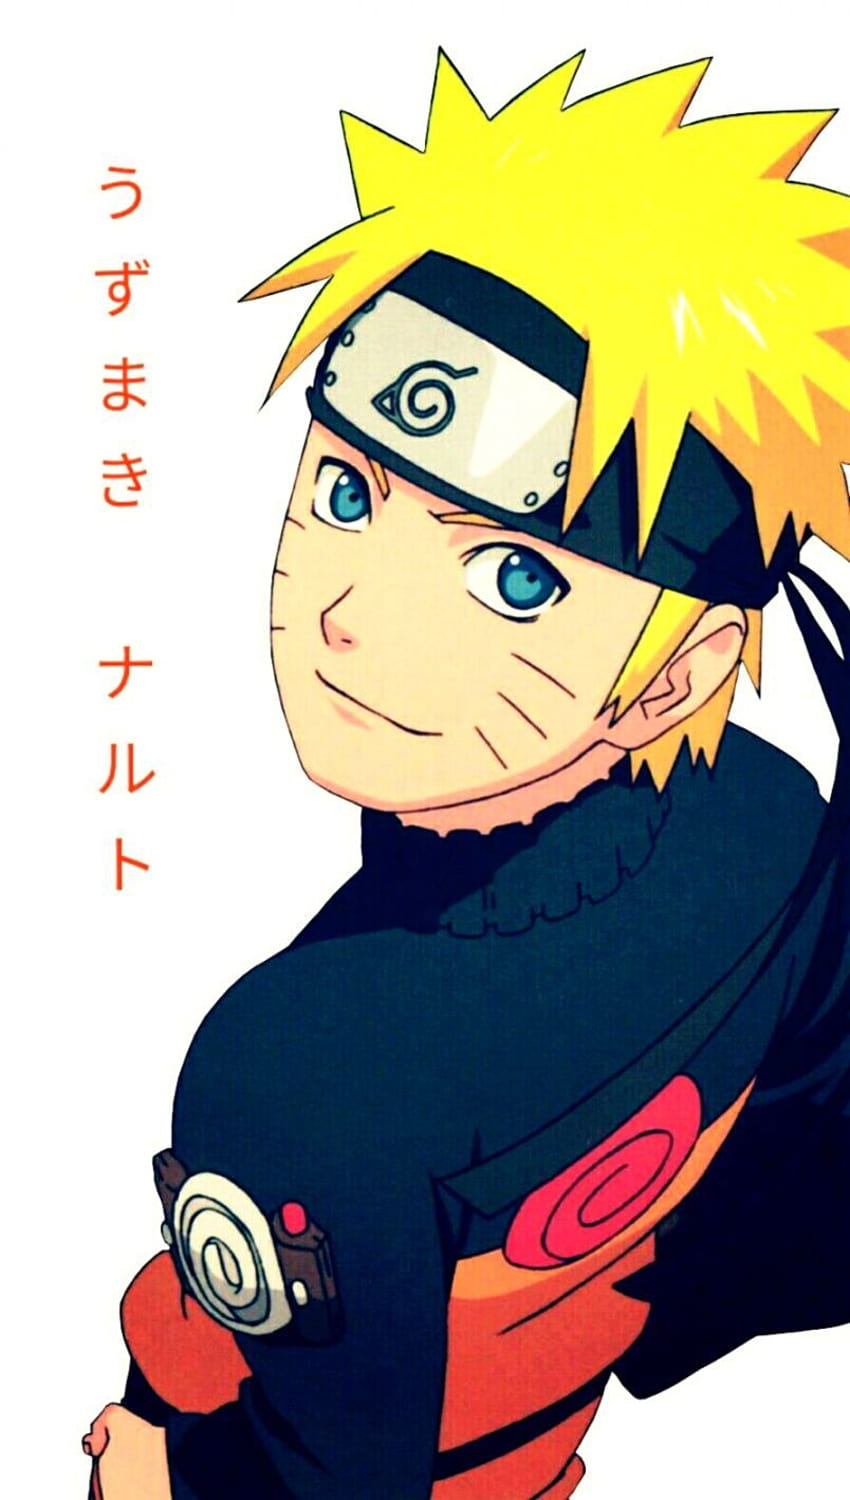 Hình nền Naruto dễ thương cho điện thoại iPhone là lựa chọn tuyệt vời cho những ai yêu thích bộ truyện Naruto. Với độ phân giải cao, chất lượng hình ảnh tuyệt vời và cách tạo bóng độc đáo, hình nền này chắc chắn sẽ làm bạn hài lòng. Bạn sẽ được tận hưởng hình ảnh Naruto đầy sức sống và mạnh mẽ trên điện thoại của mình.